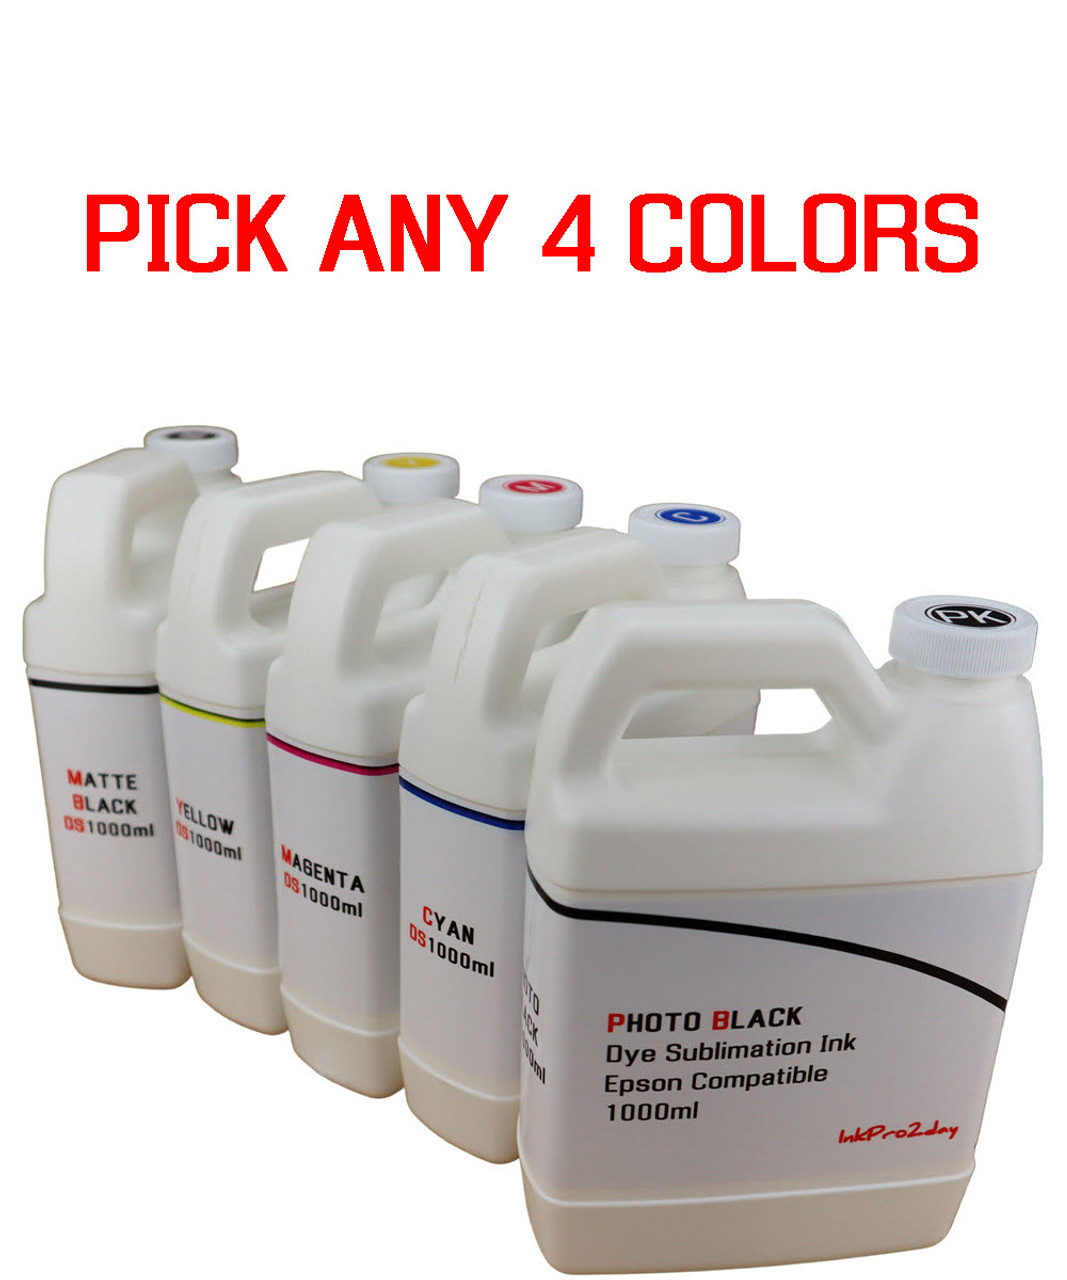 Pick 4 Colors 1000ml Bottles Dye Sublimation Ink for Epson SureColor T3270 T5270 T7270 Printers 